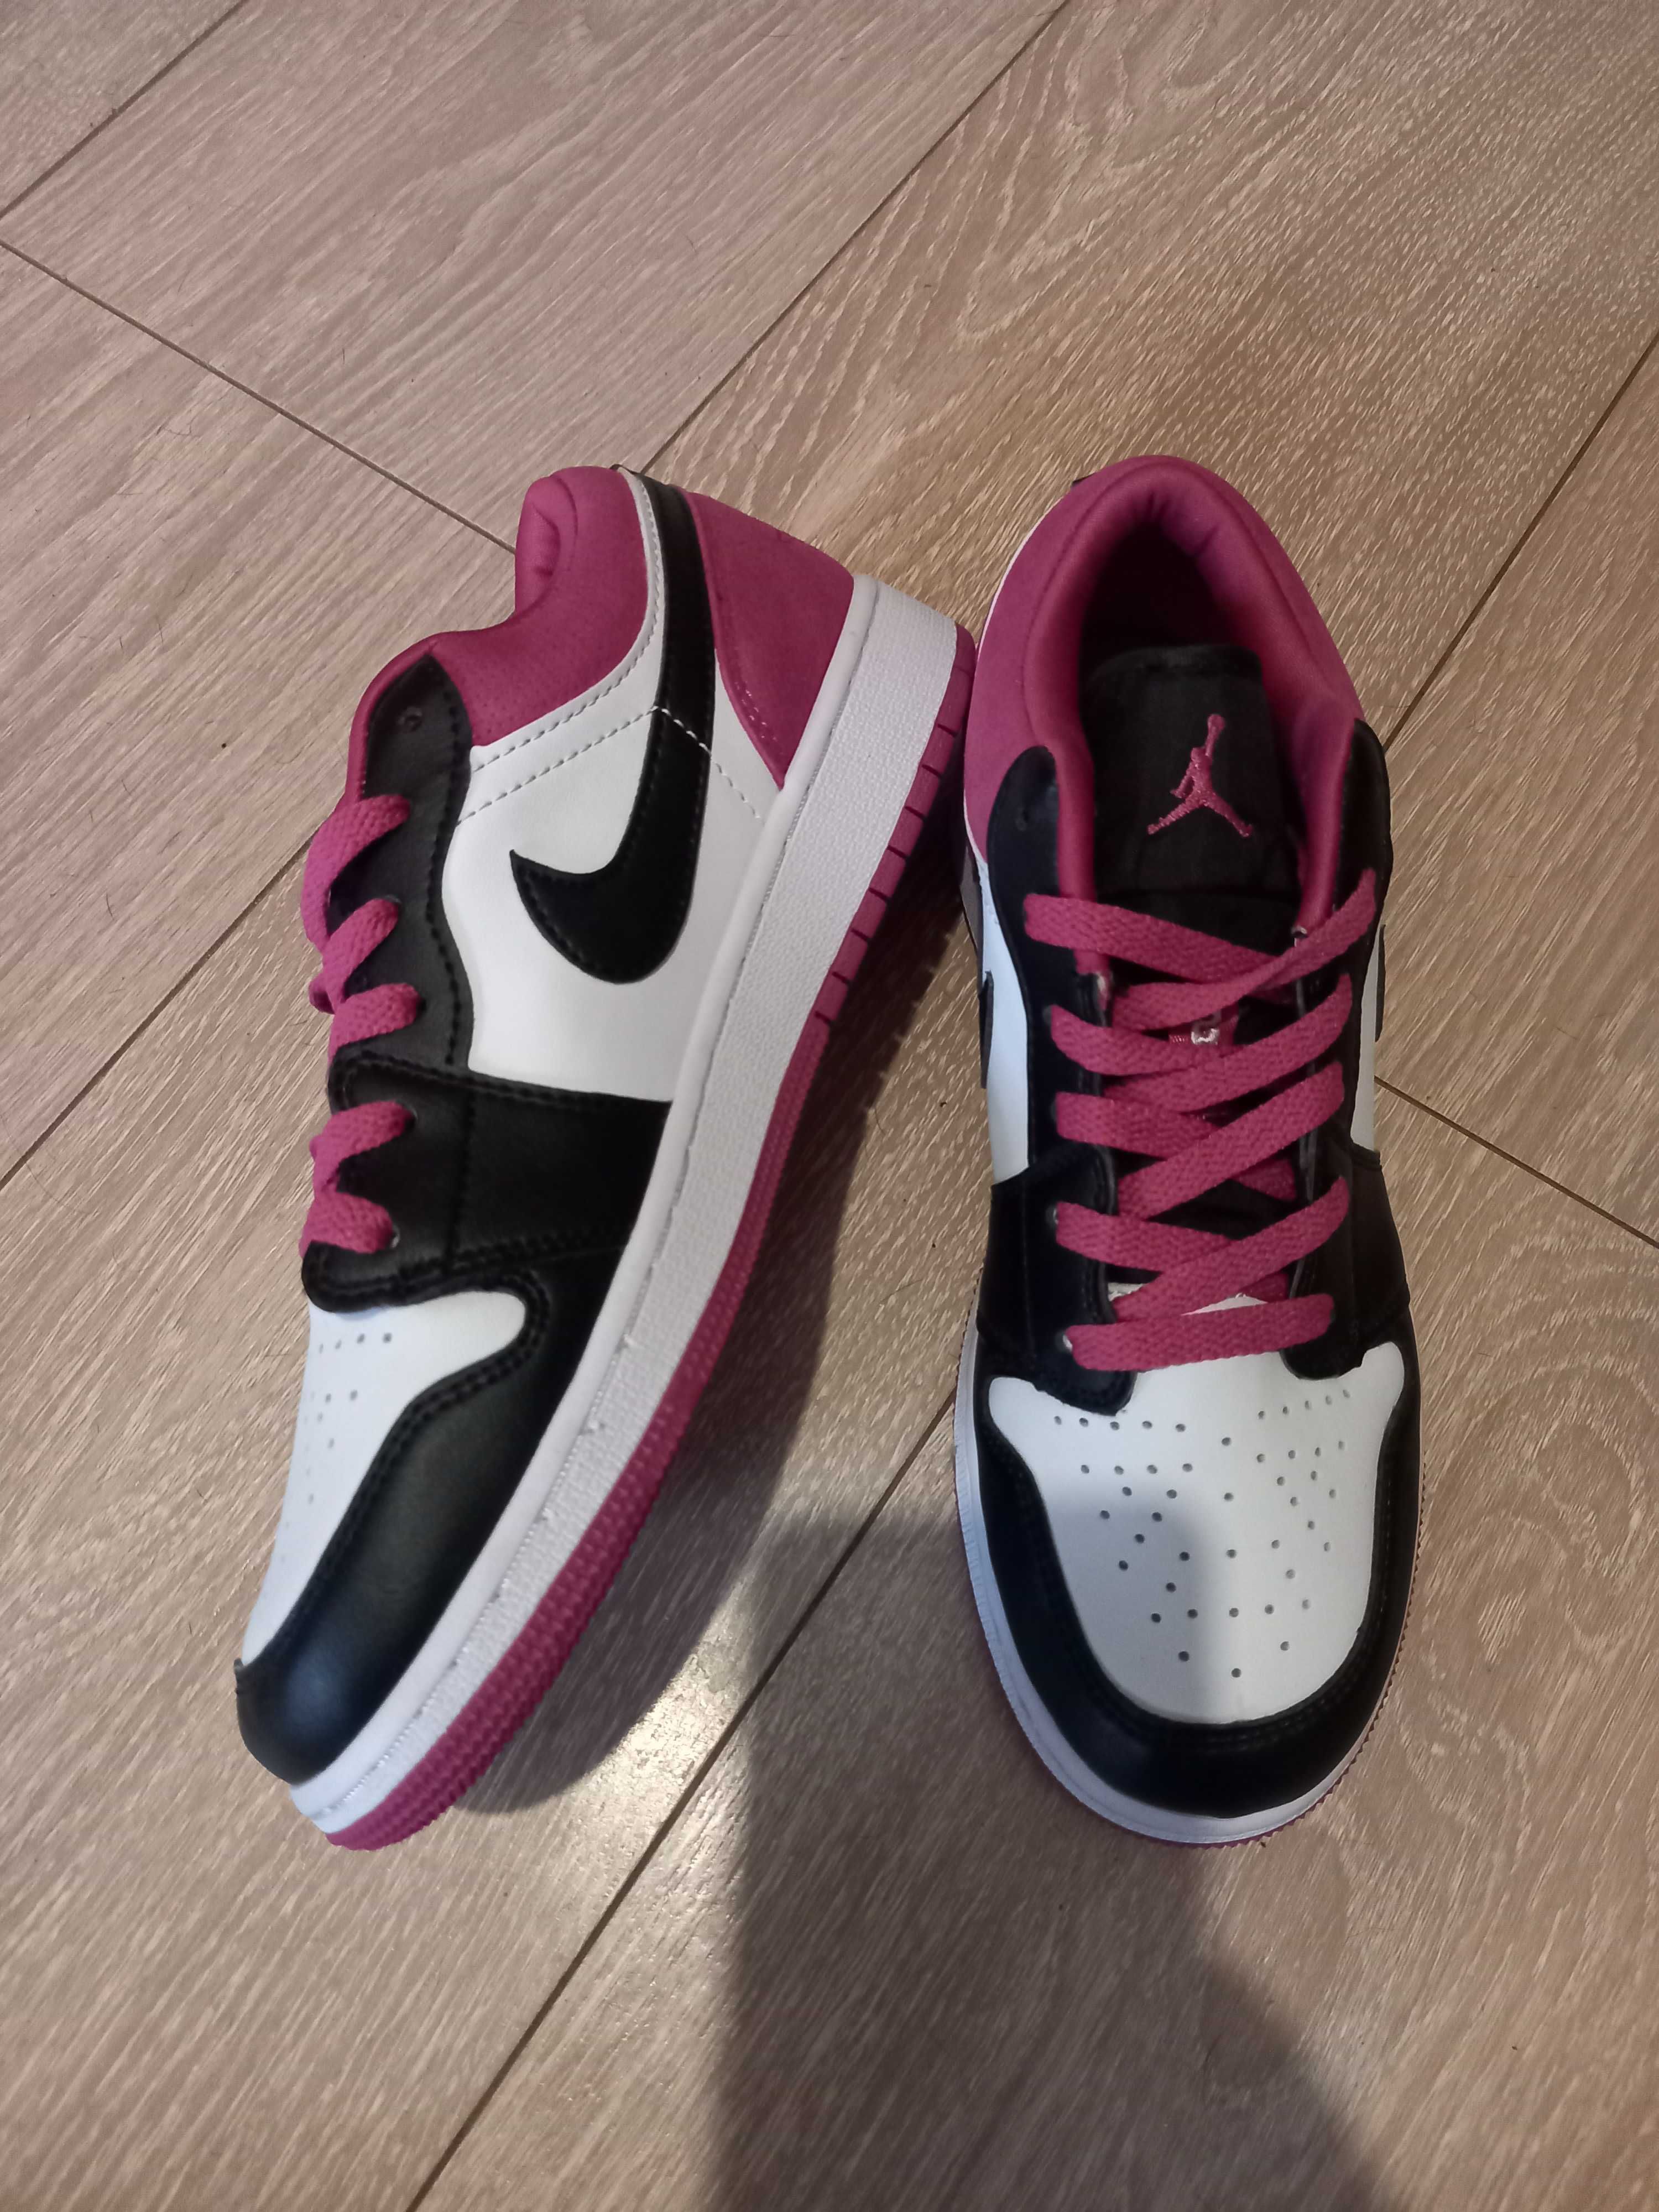 Жіночі кросівки Nike Air Jordan 1 Low pink black